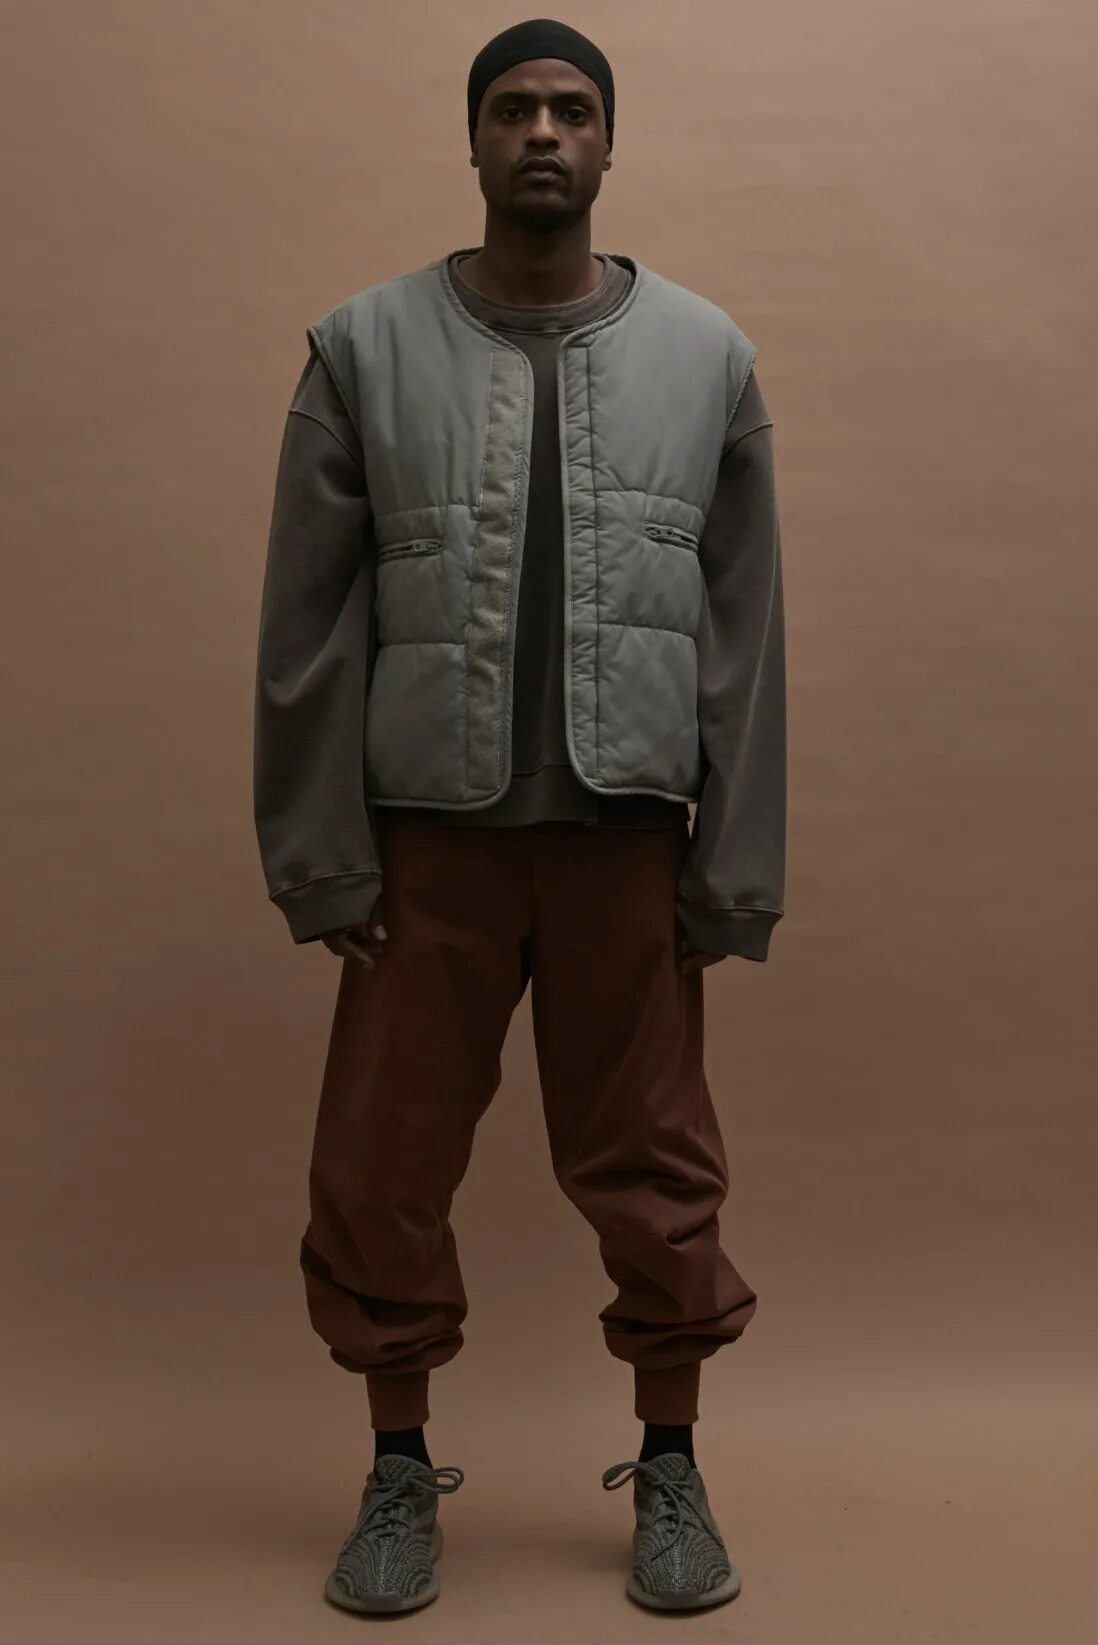 Одежда Yeezy Kanye West. Канье Уэст одежда Yeezy. Канье Уэст Fashion. Yeezy одежда